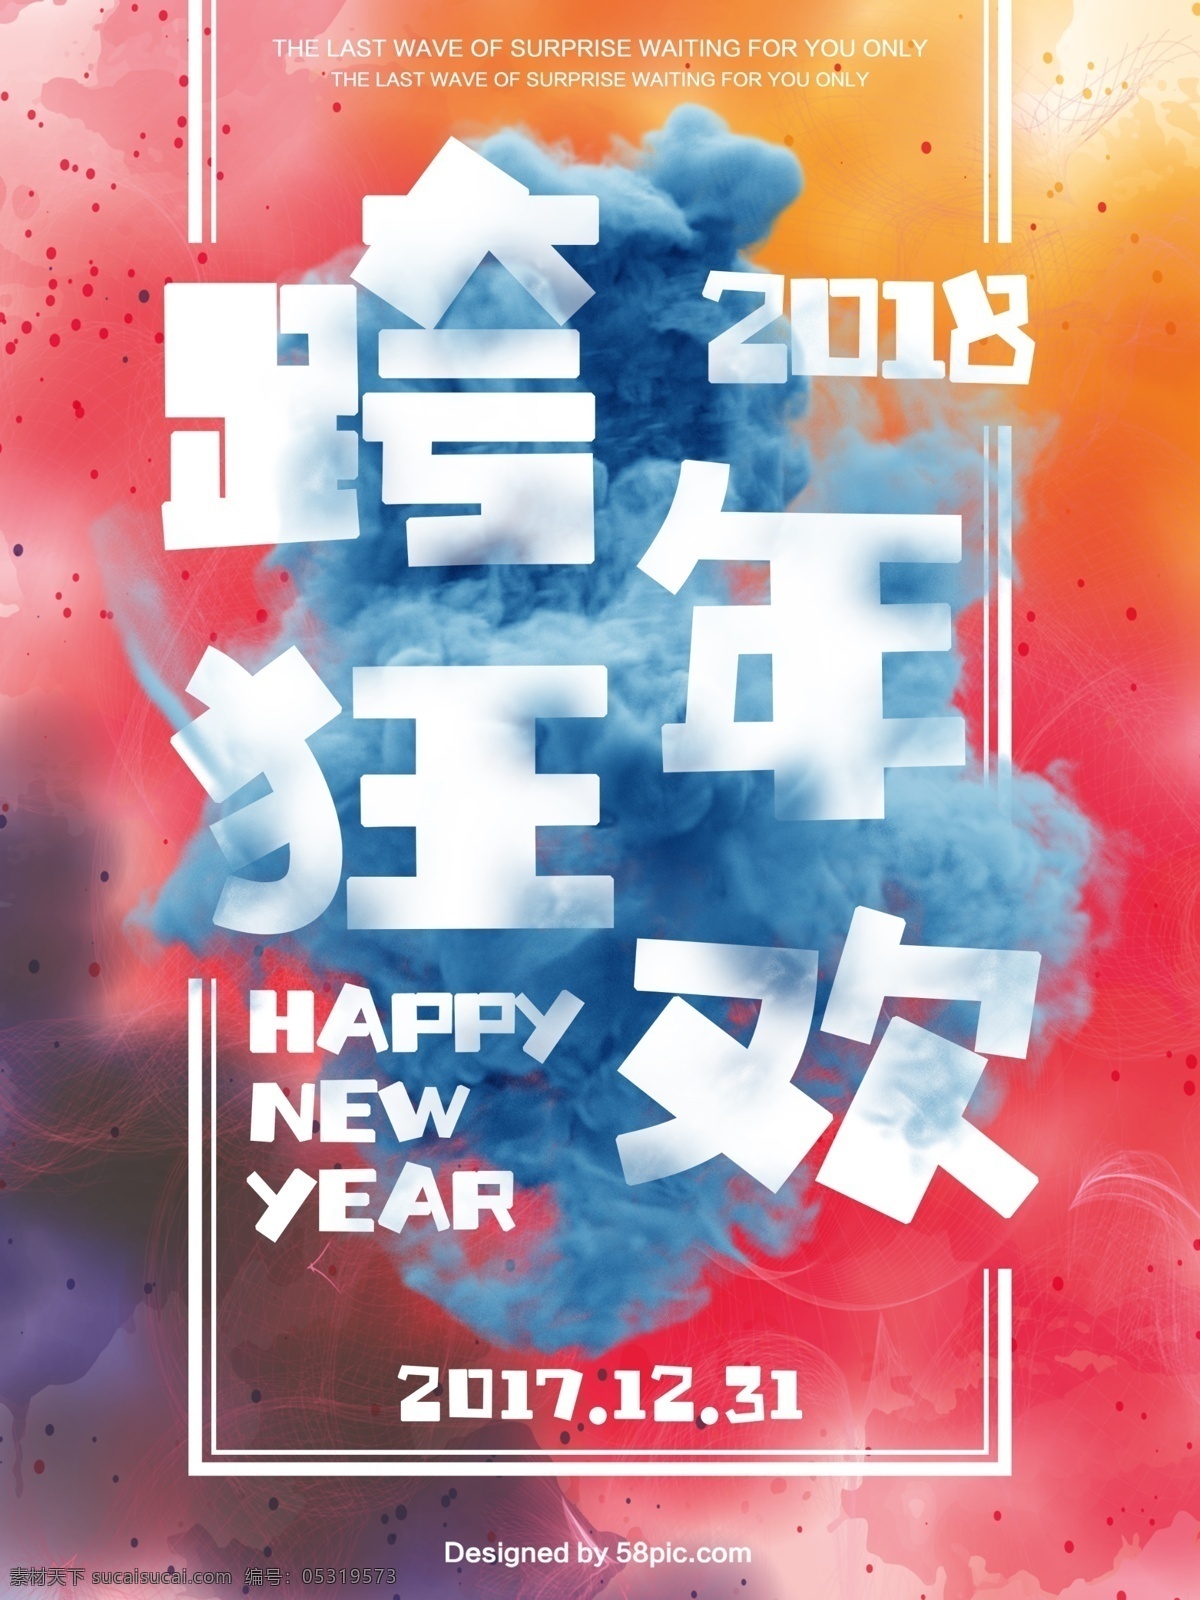 2018 跨 年 狂欢夜 宣传海报 模板 happy new year 彩色粉末 彩色烟雾 创意 促销 大气 海报 跨年 派对 商场 宣传